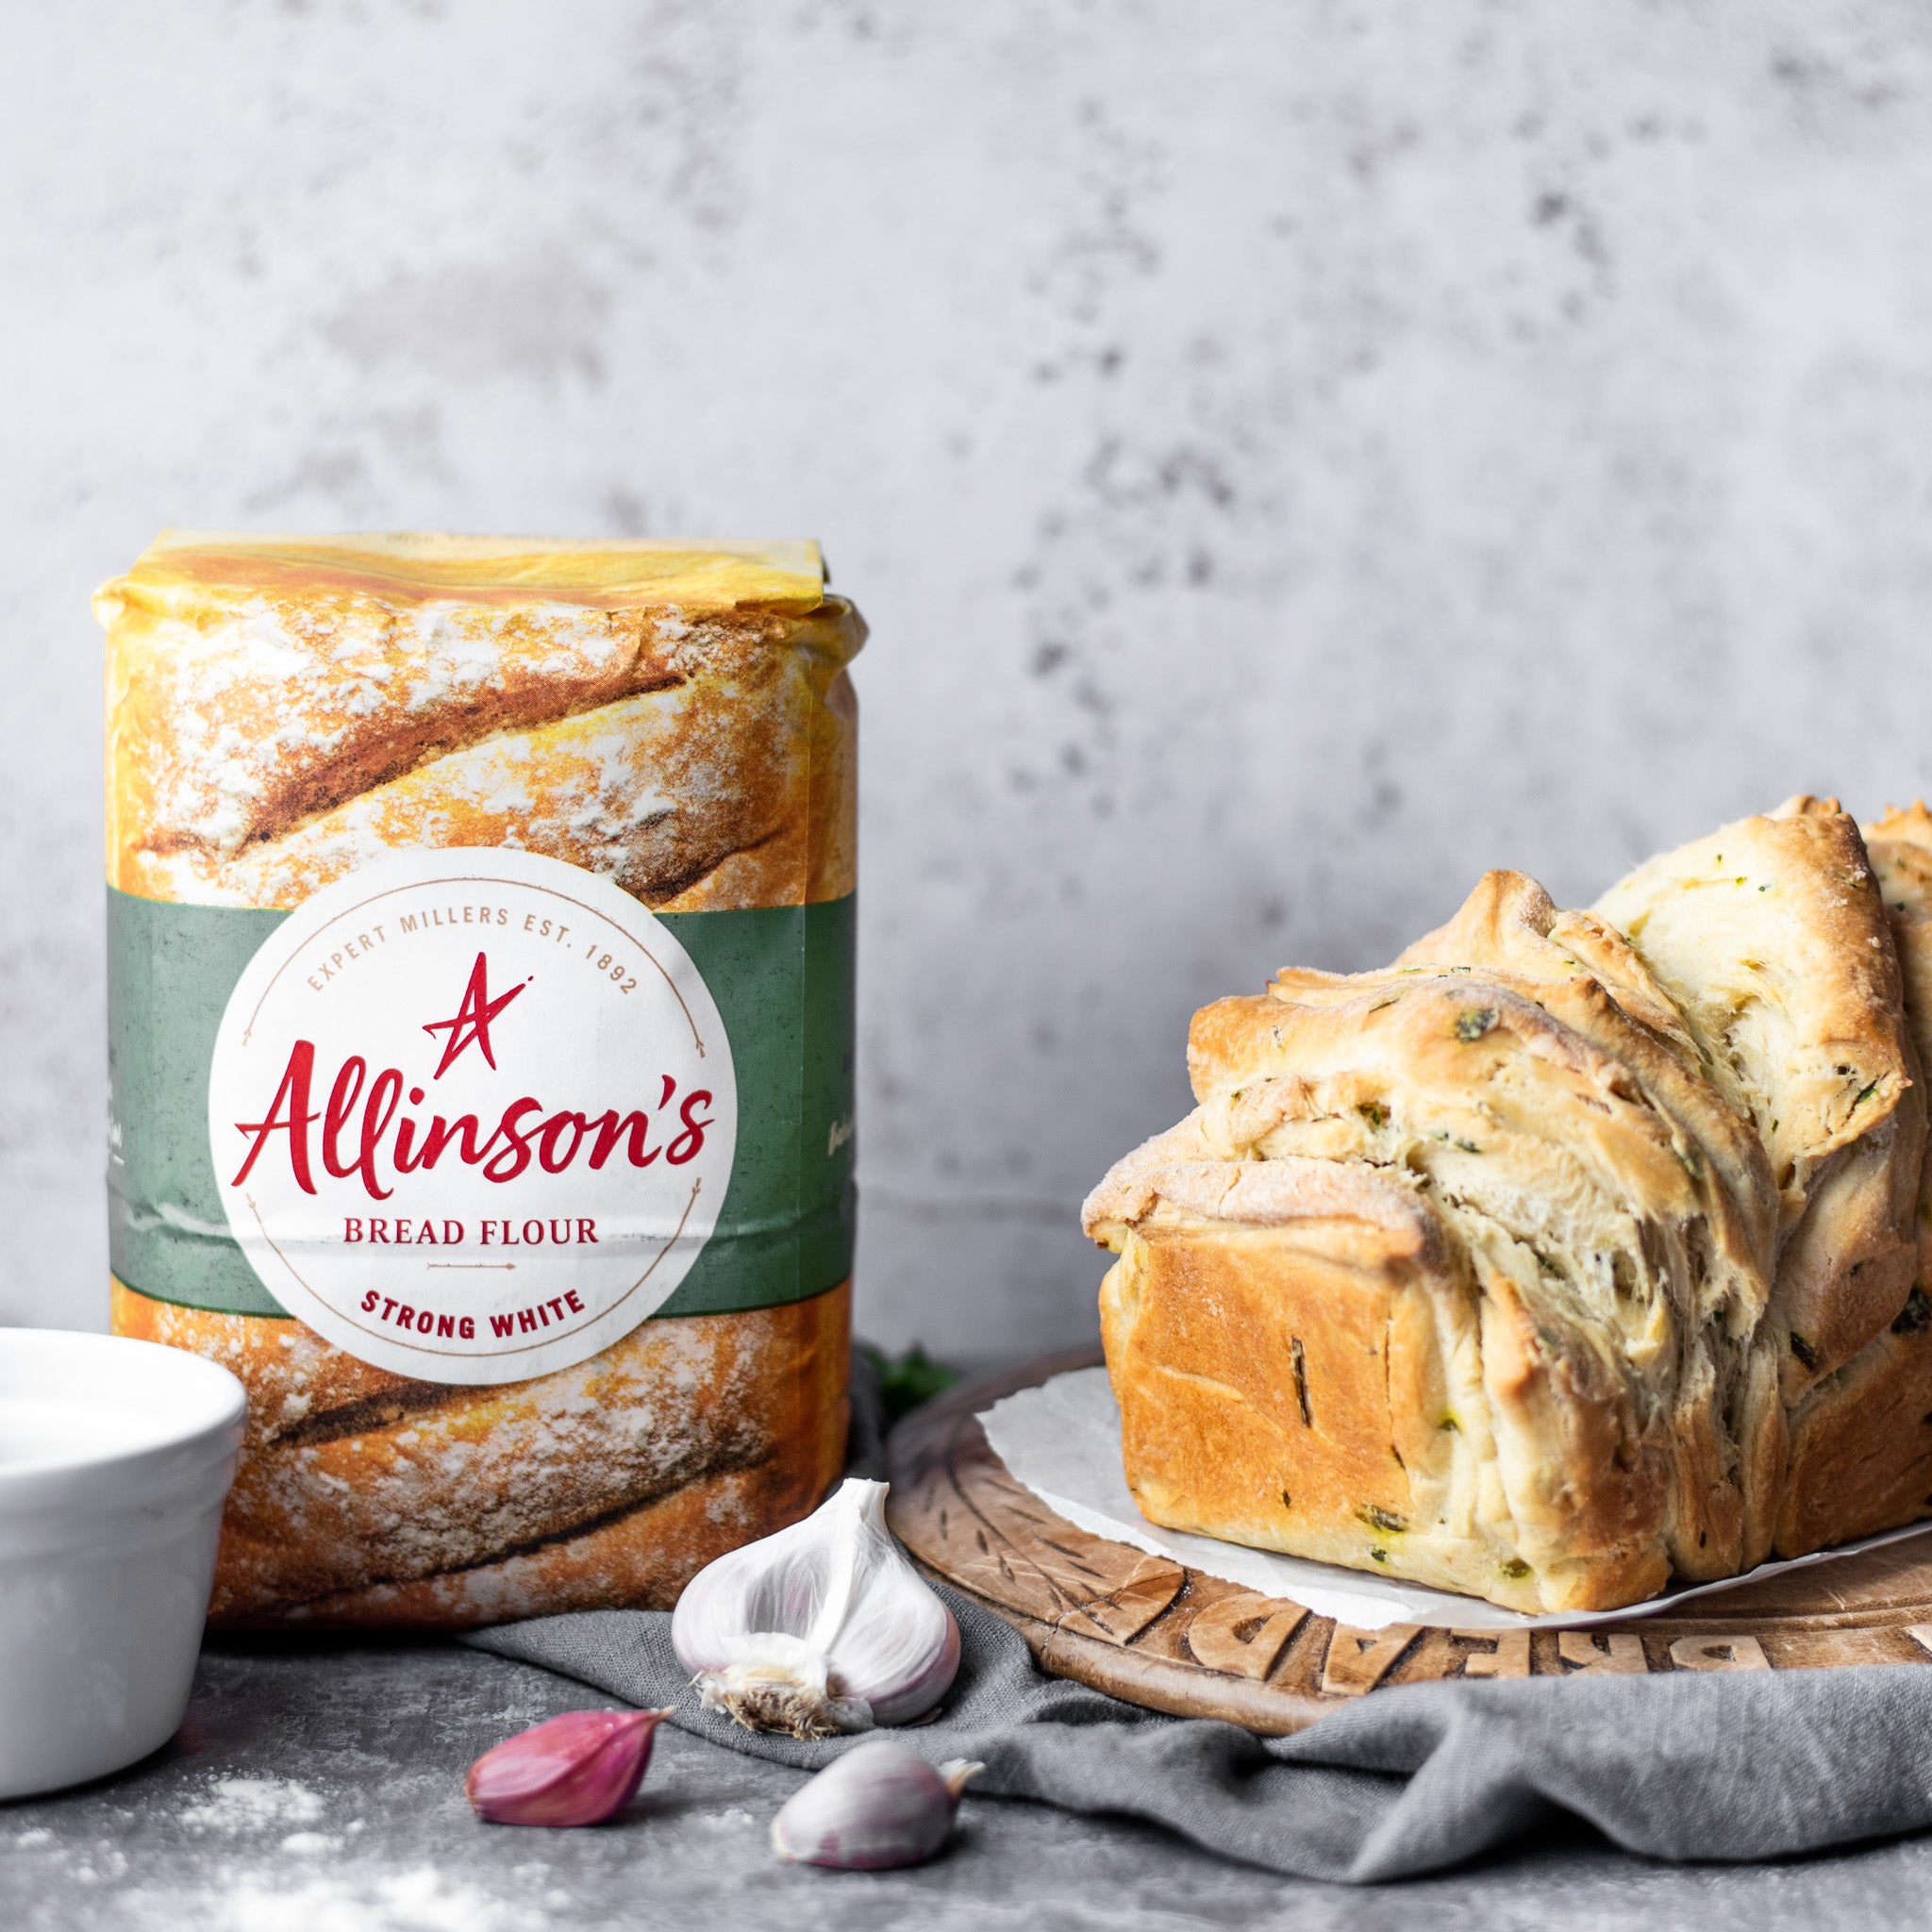 Allinsons-Best-Ever-Garlic-Bread-1-1-Baking-Mad-1.jpg